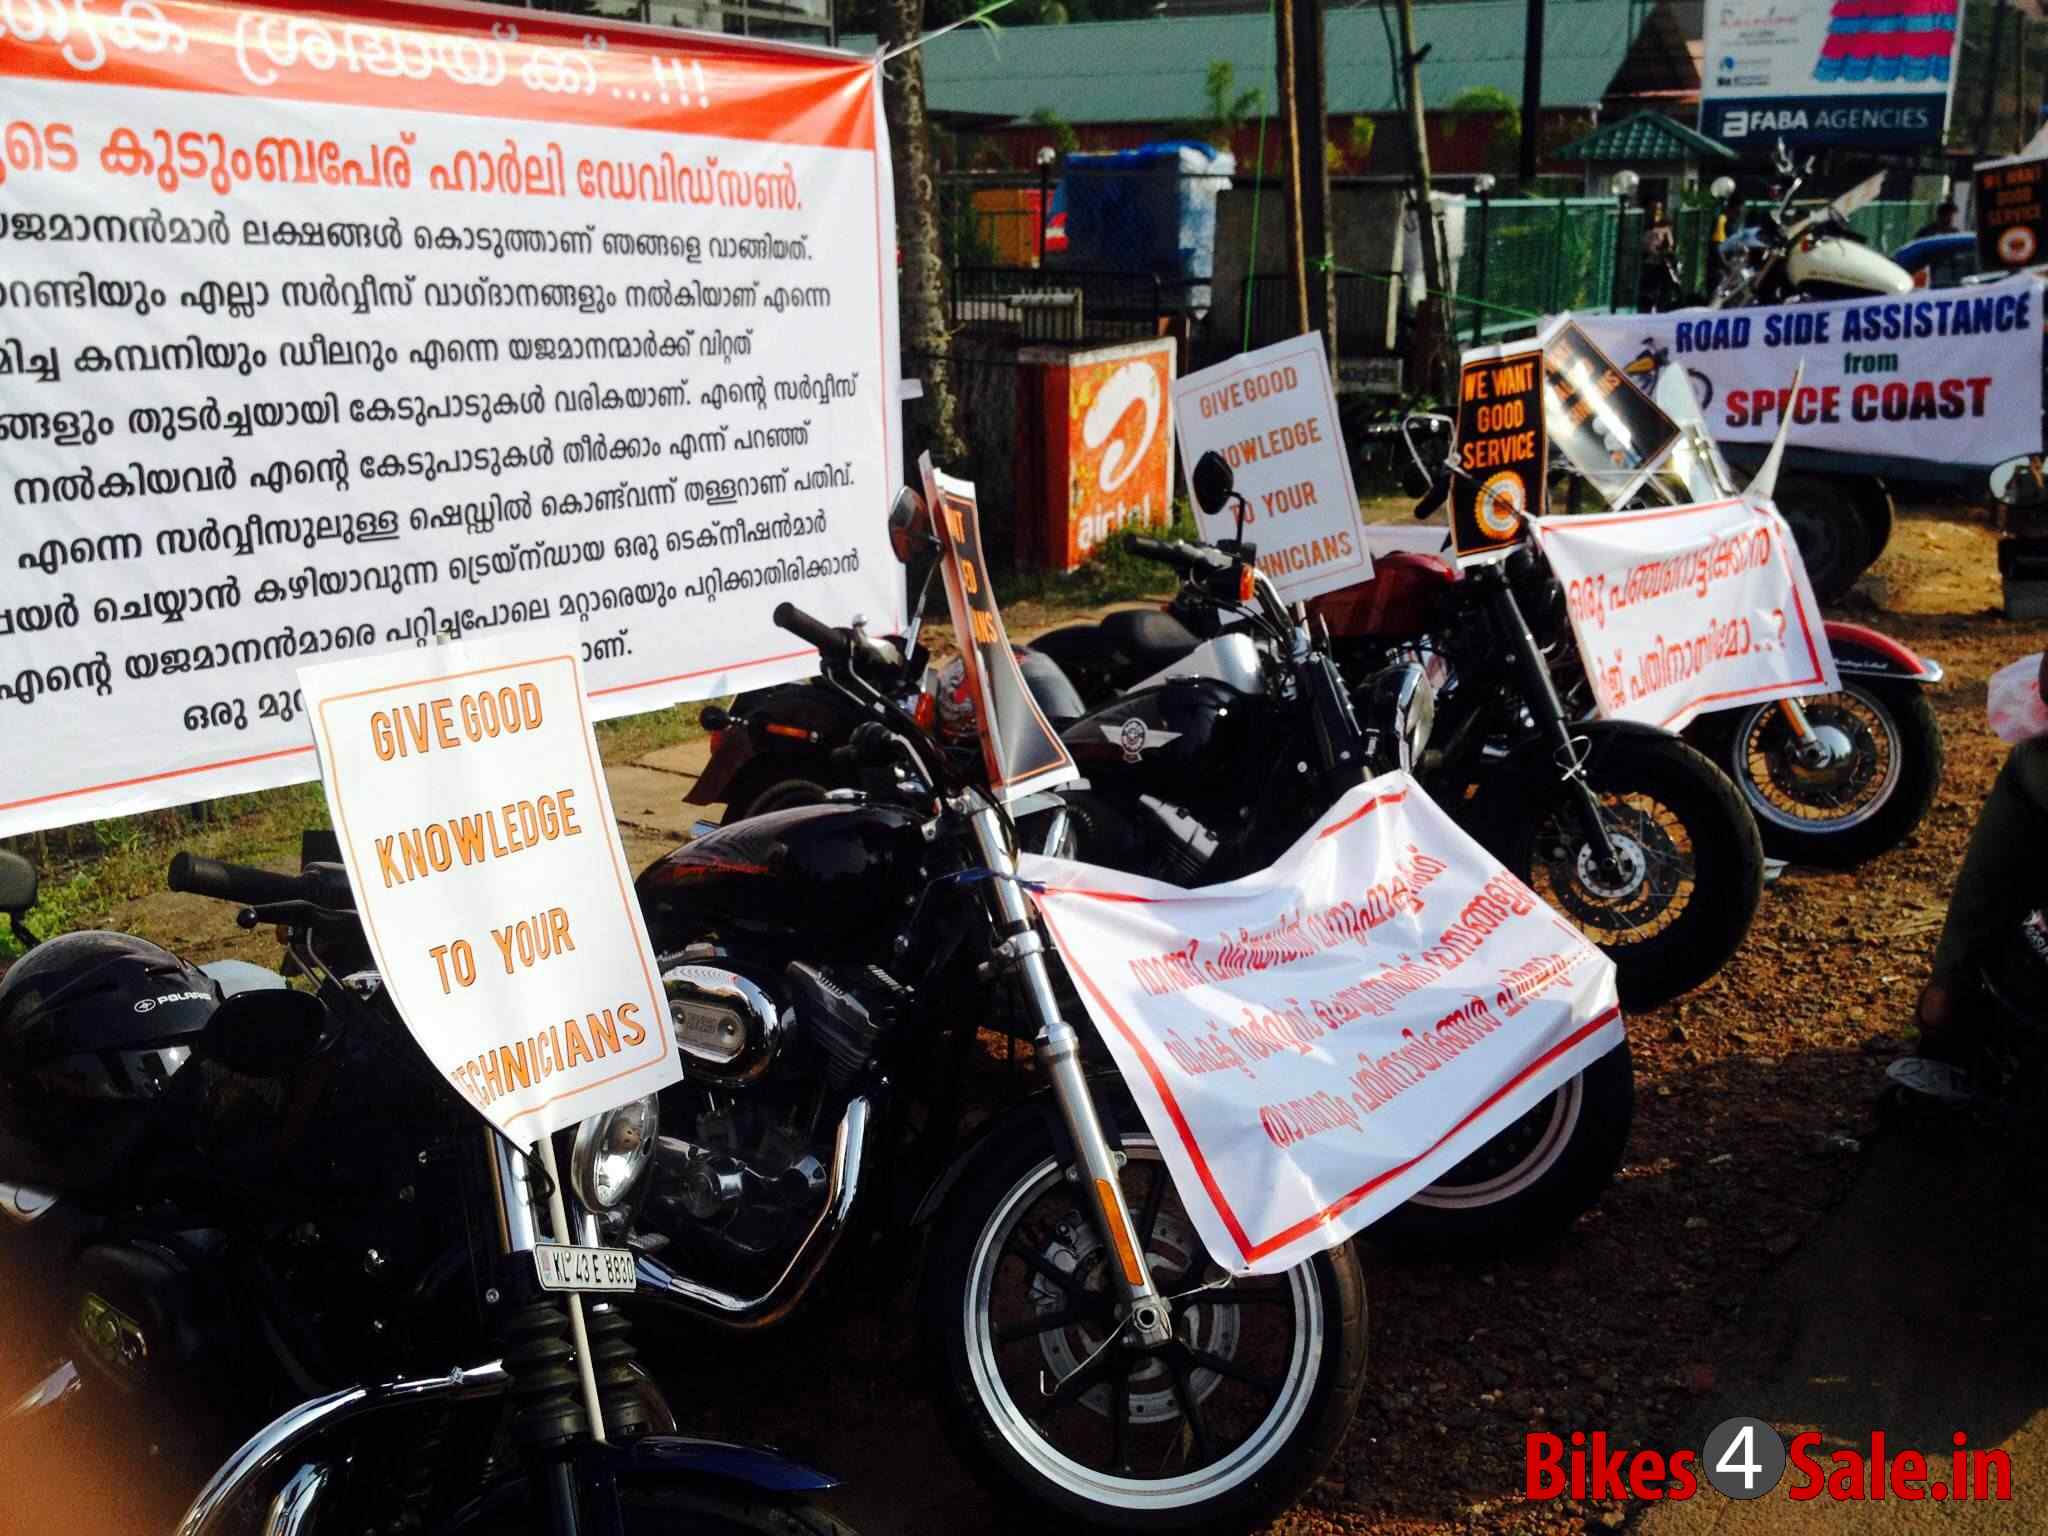 Harley Davidson Bikers Protest